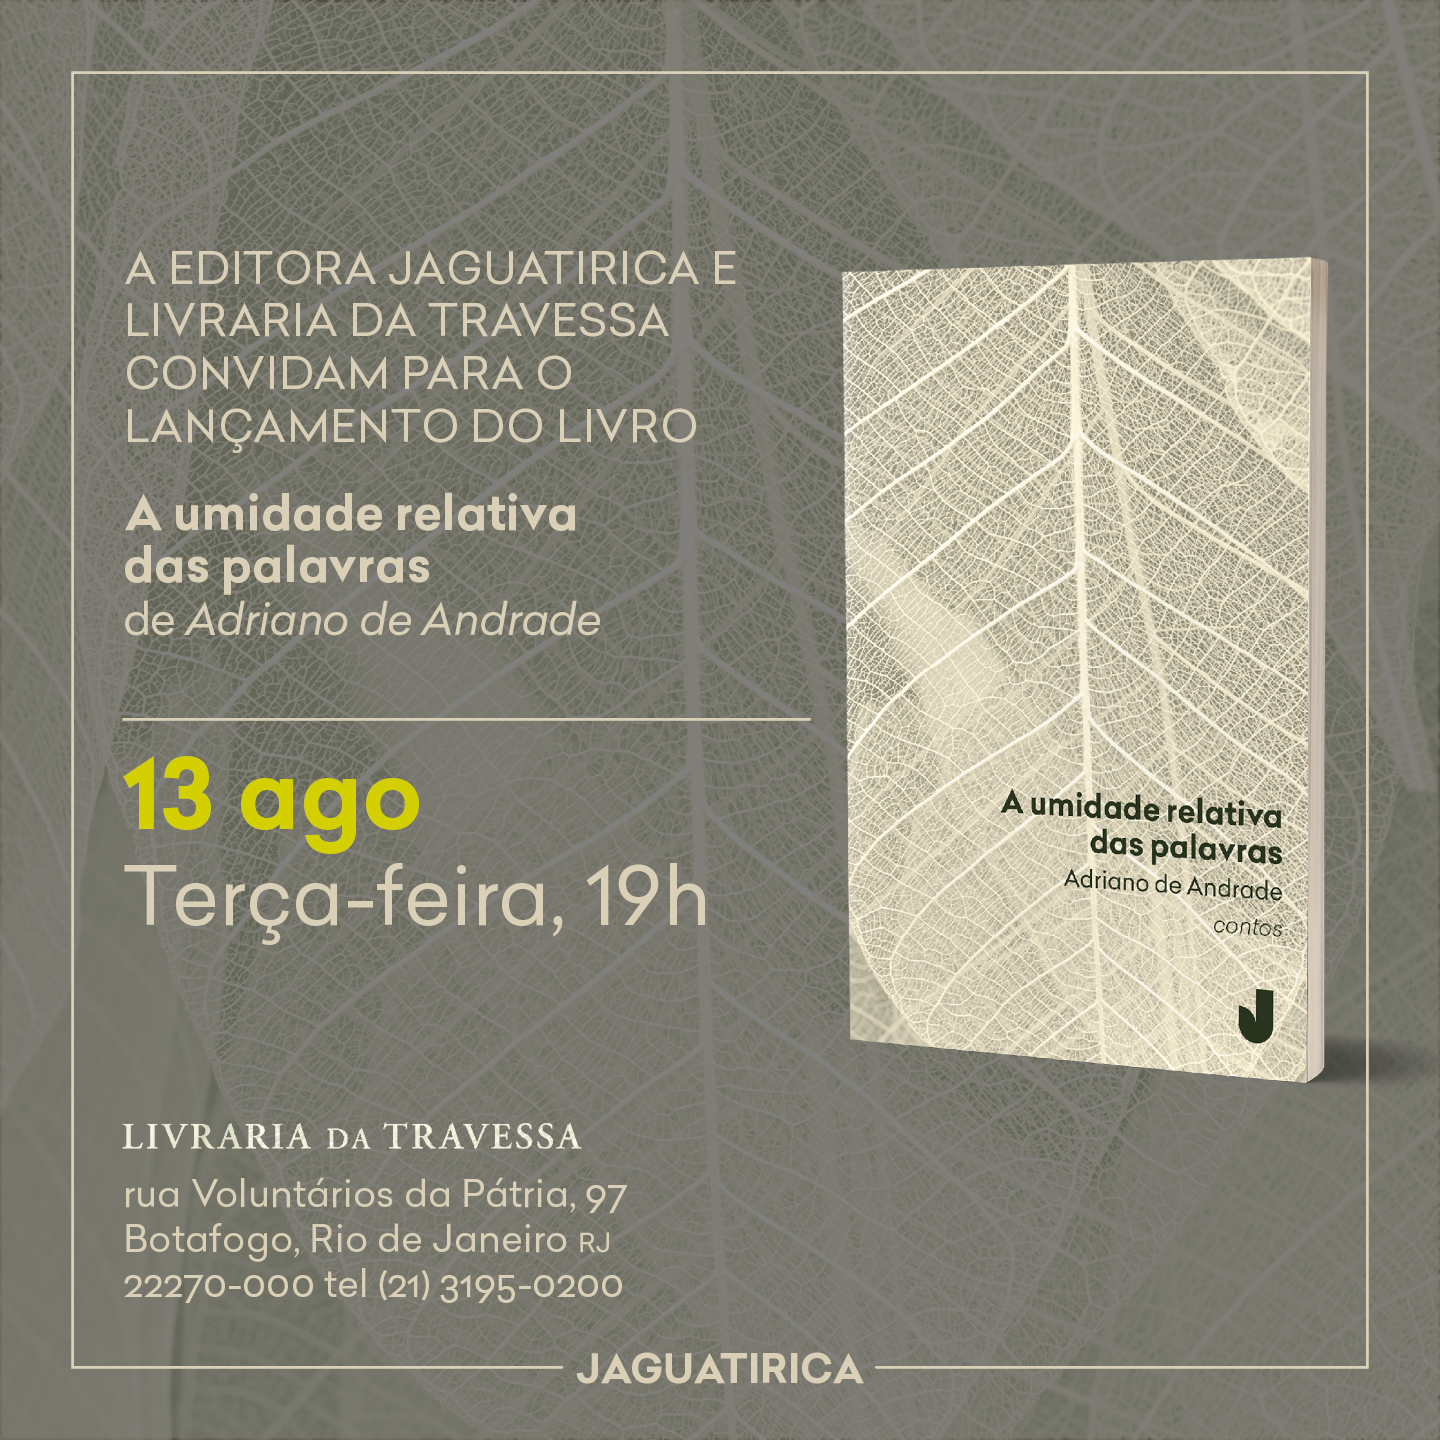 convite a umidade relativa - Lançamento do livro de contos "A umidade relativa das palavras",  de Adriano de Andrade